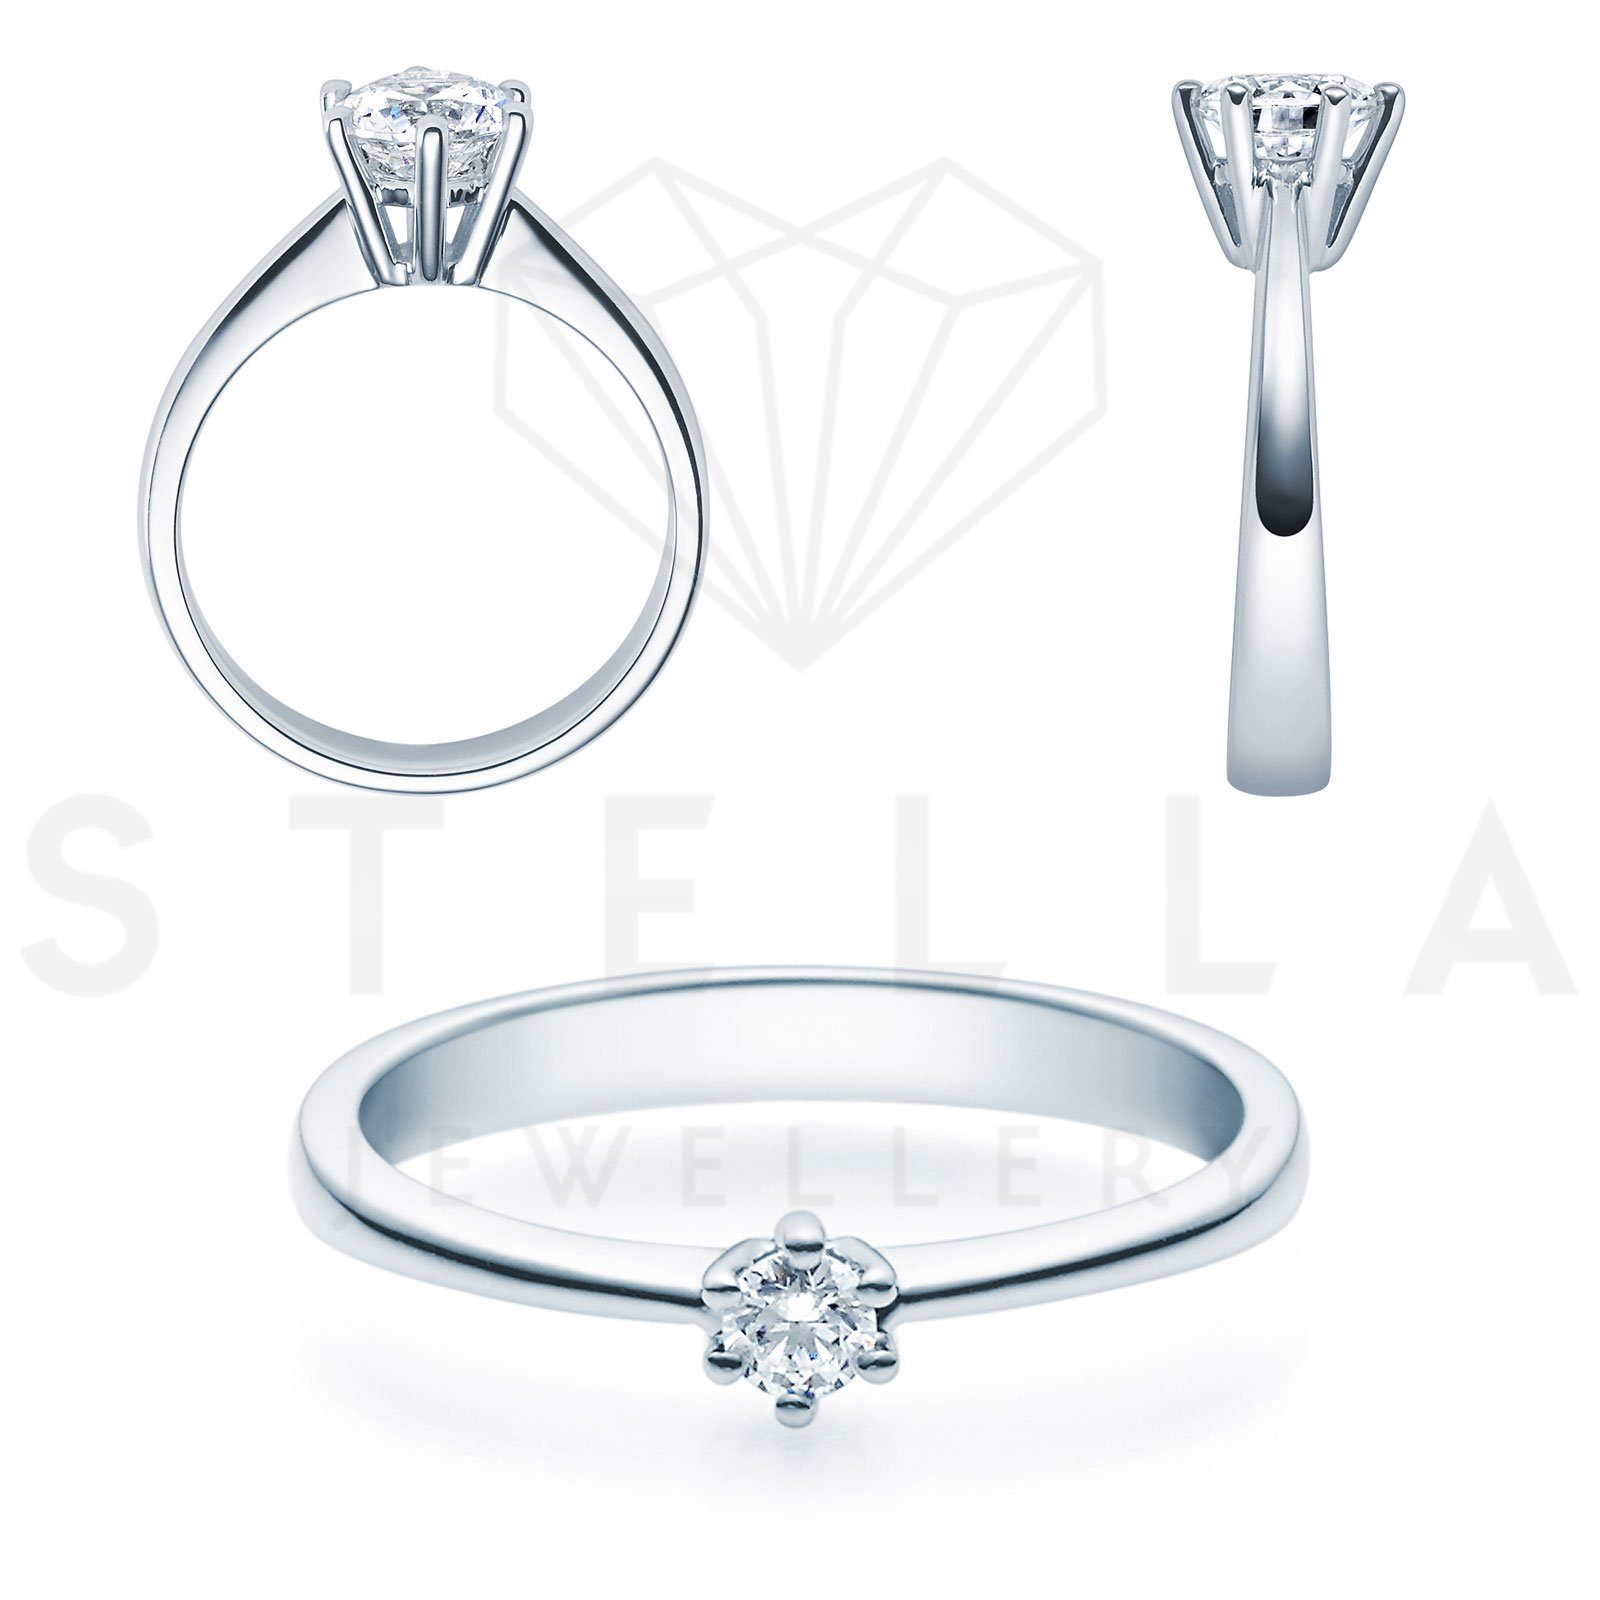 Stella-Jewellery Verlobungsring Verlobungsring 585er Weißgold Diamant Gr. 54 (inkl. Etui), mit Brillant 0,25ct. - Poliert